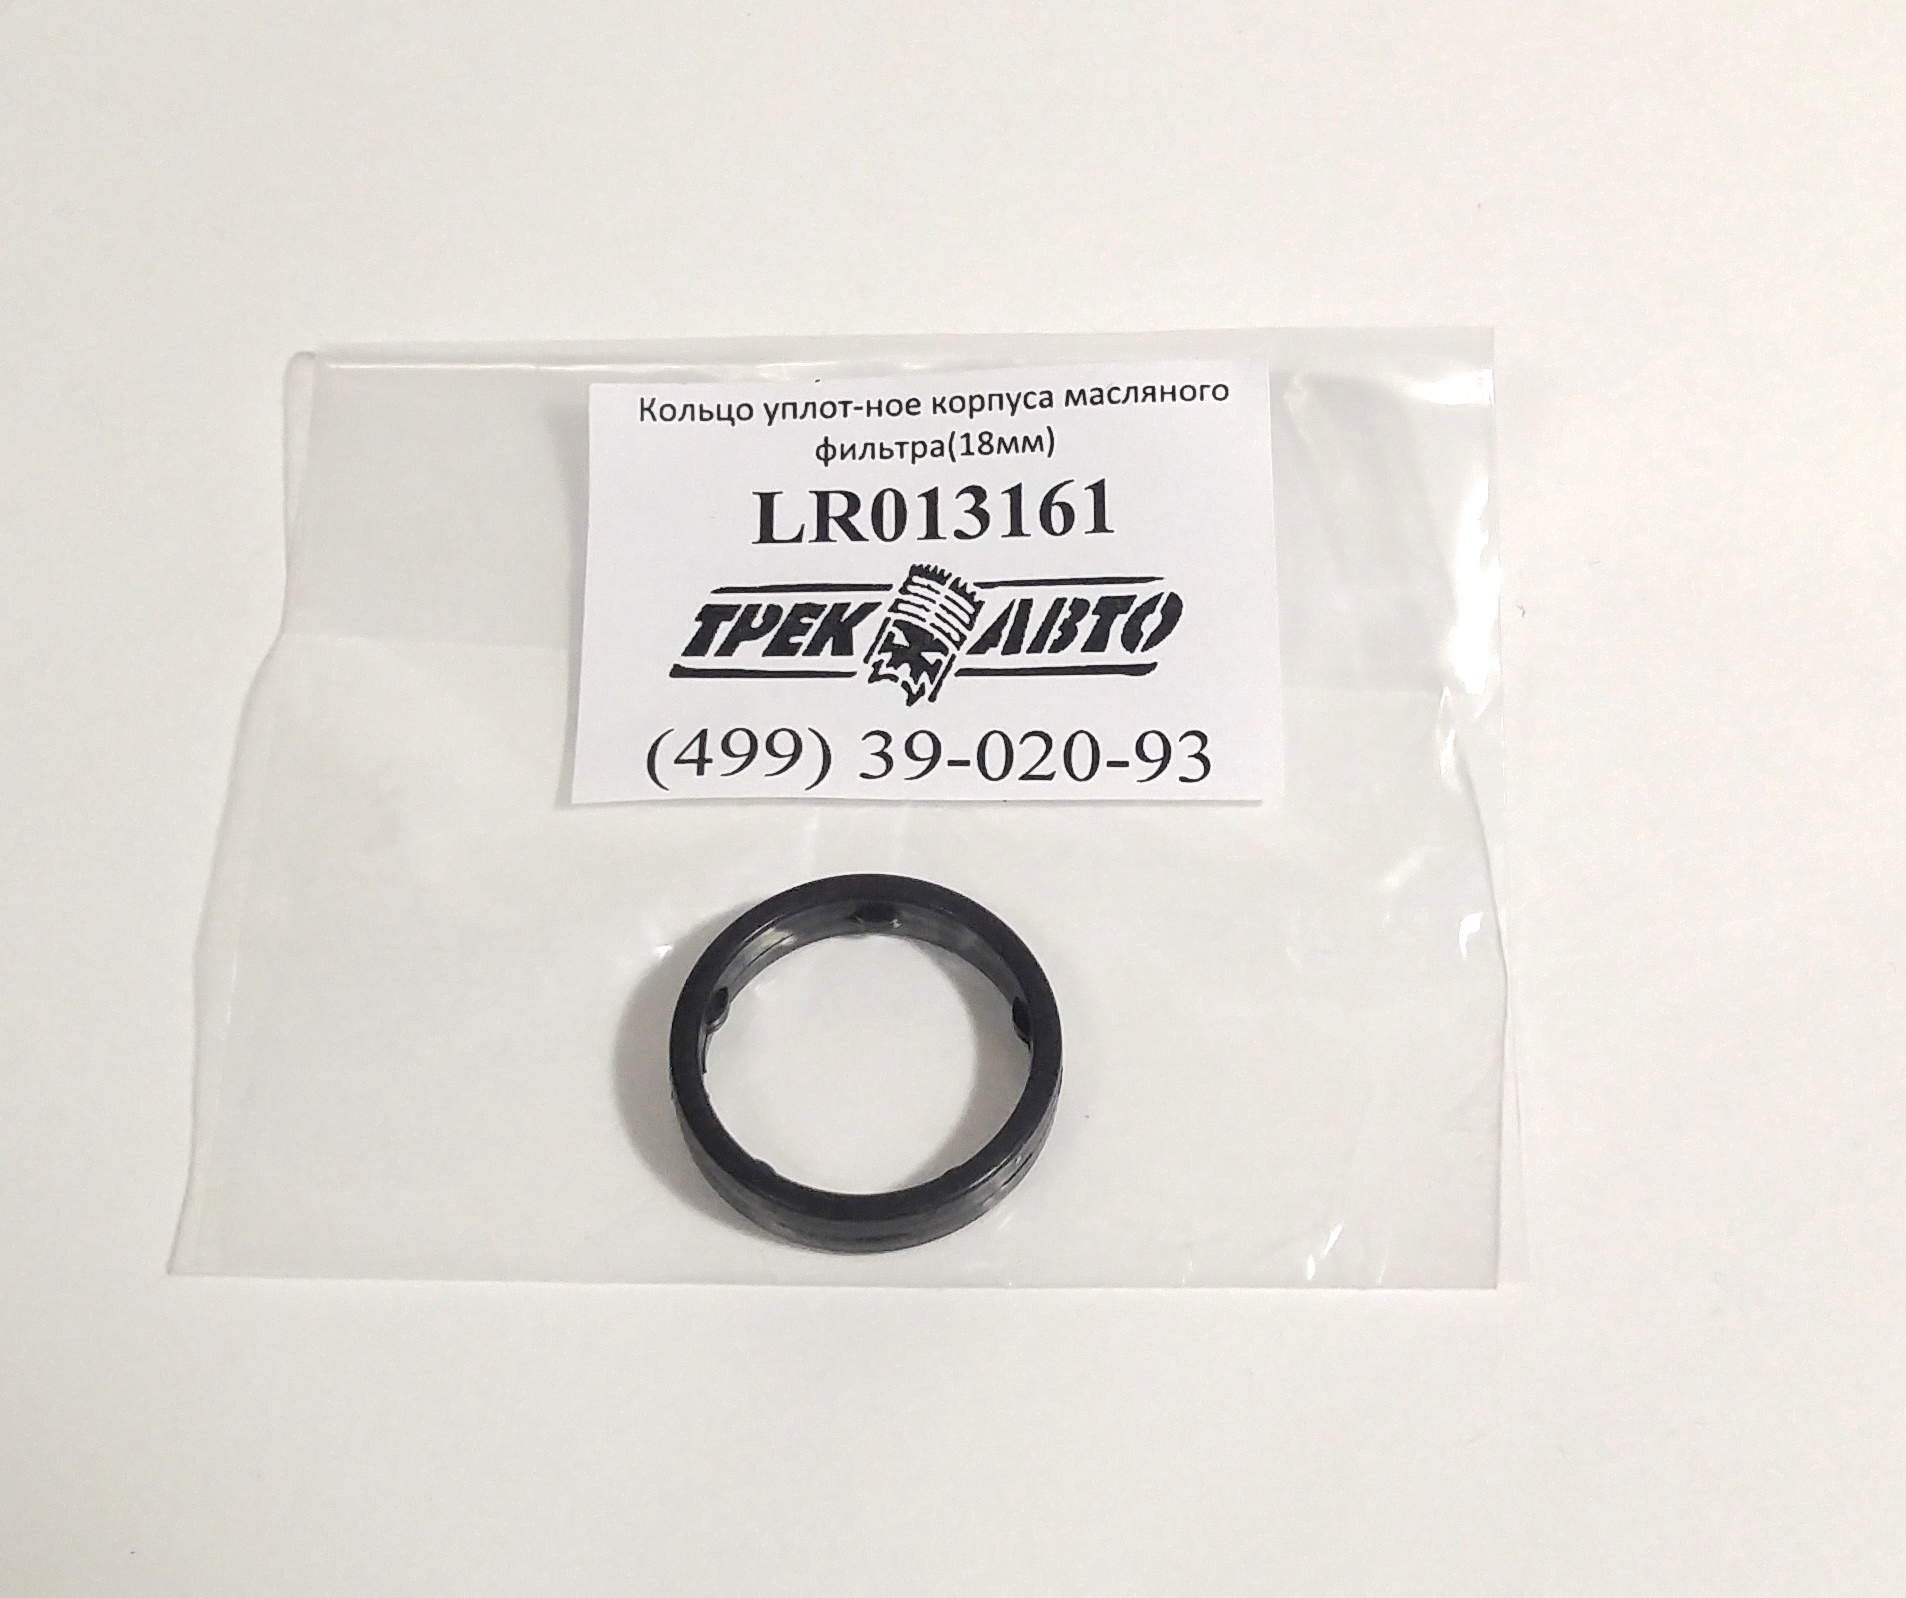 Кольцо уплотнительное корпуса маслянного фильтра (18мм) 3.0TD (LR013161||YIWU)